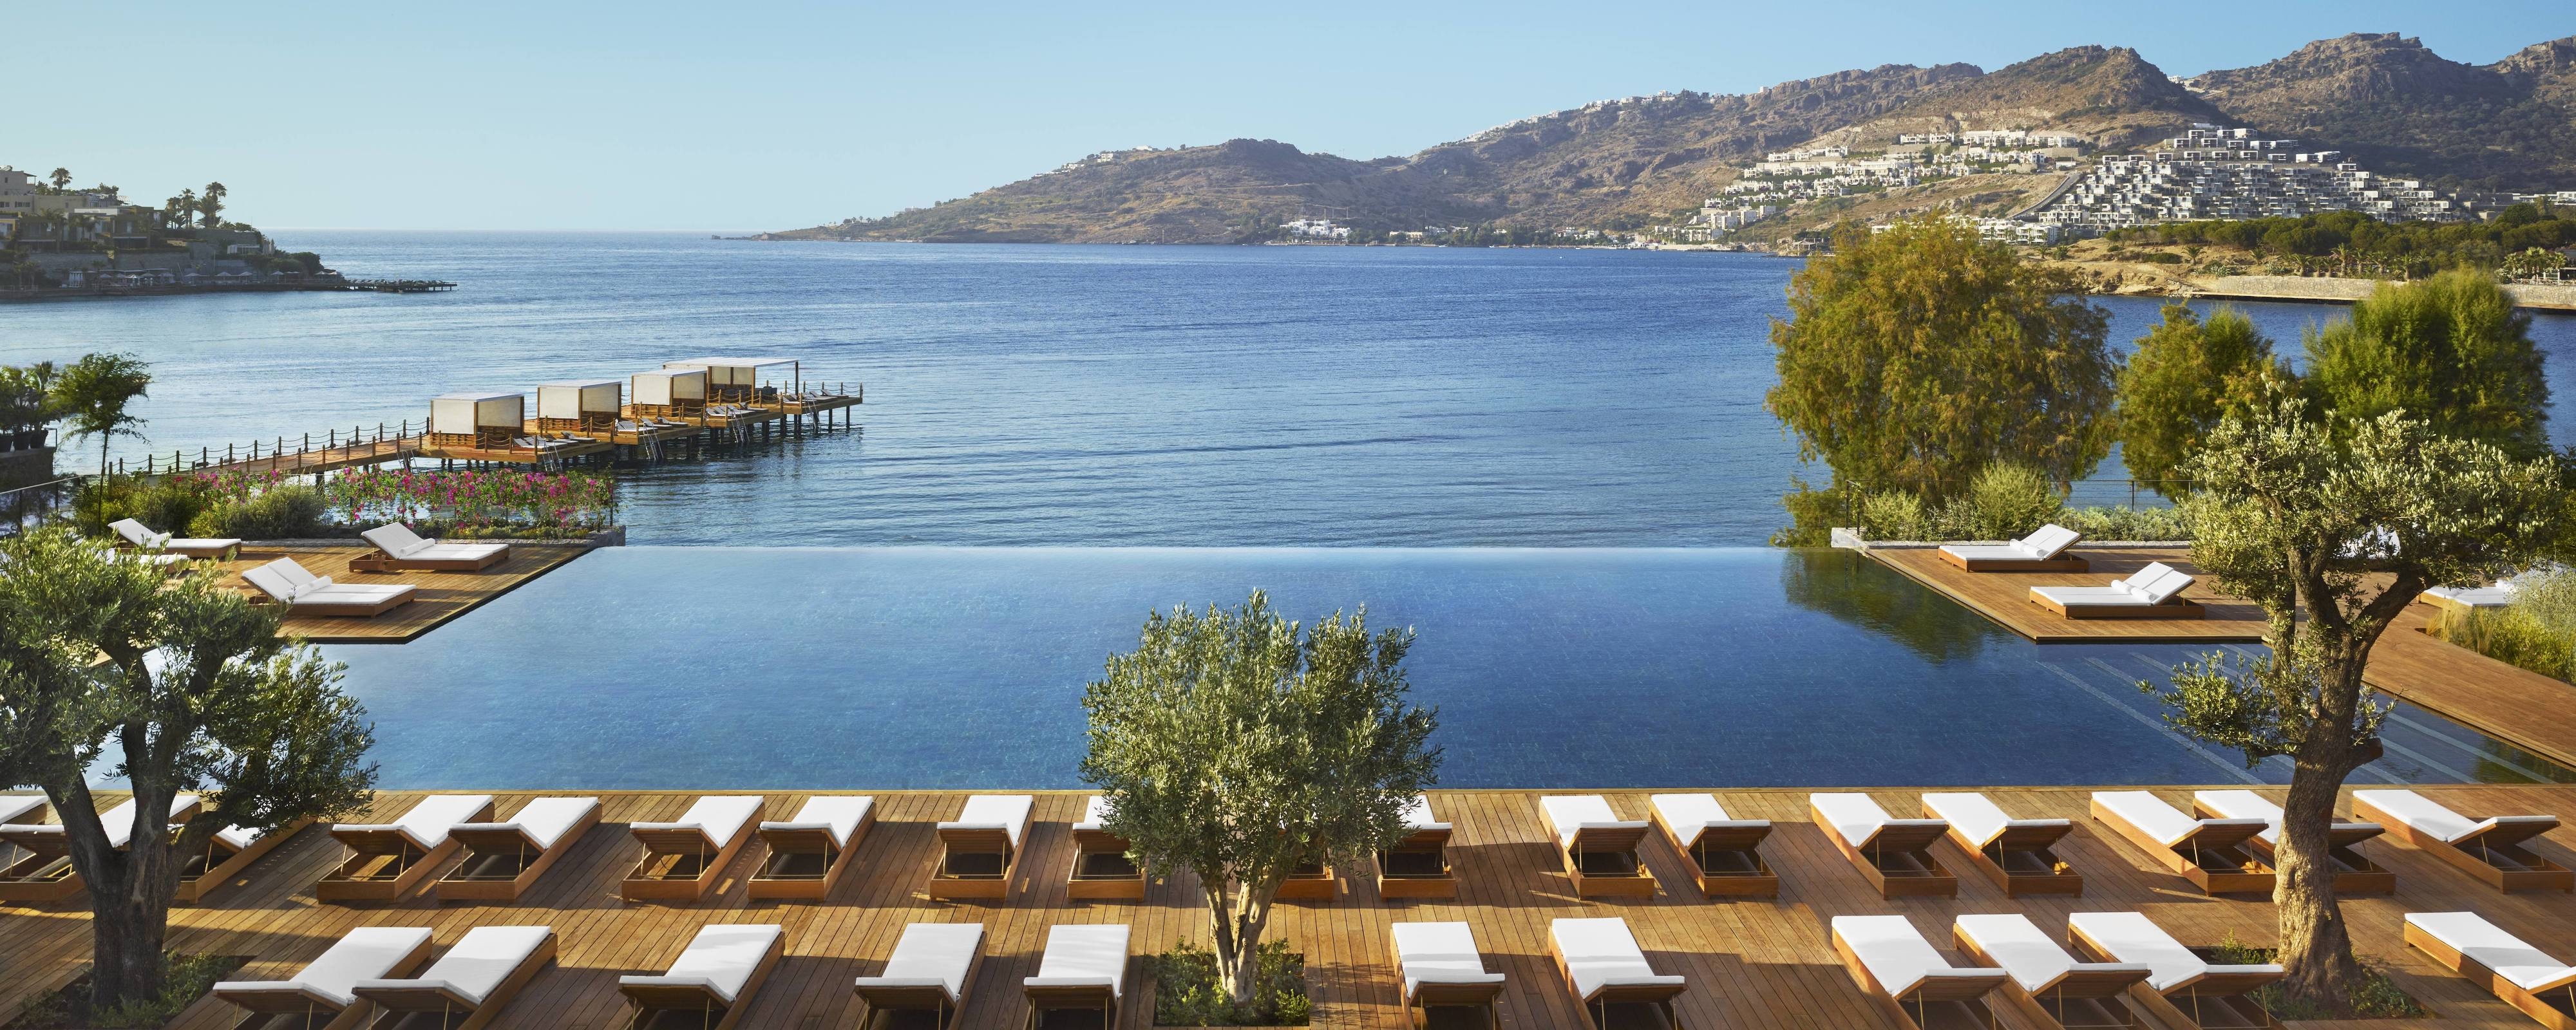 Luxury Bodrum, Turkey Hotel | The Bodrum EDITION